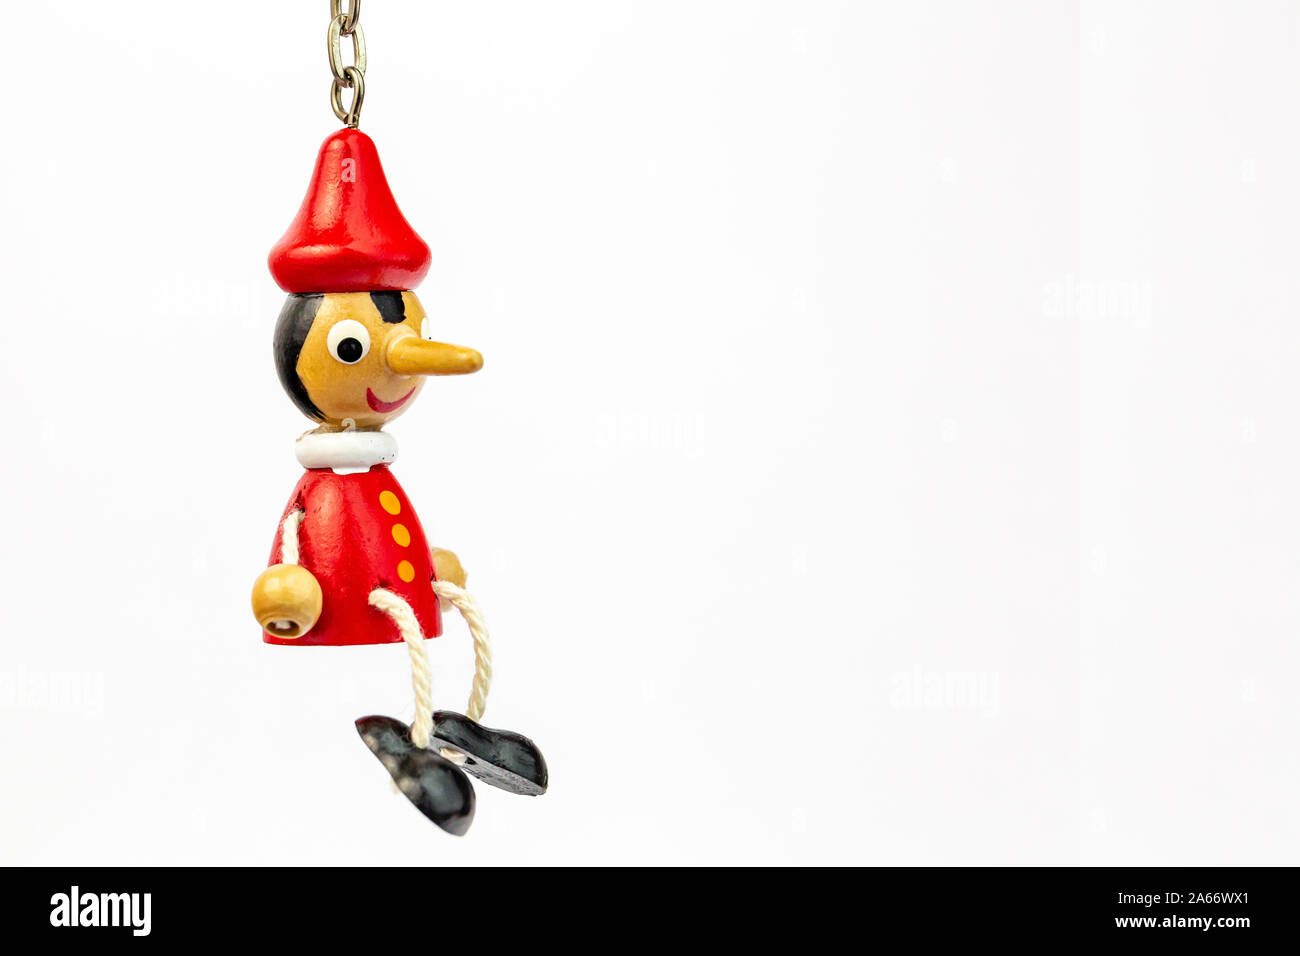 Le Pinocchio marionnette bec long qui dit des mensonges isolé sur fond blanc Banque D'Images